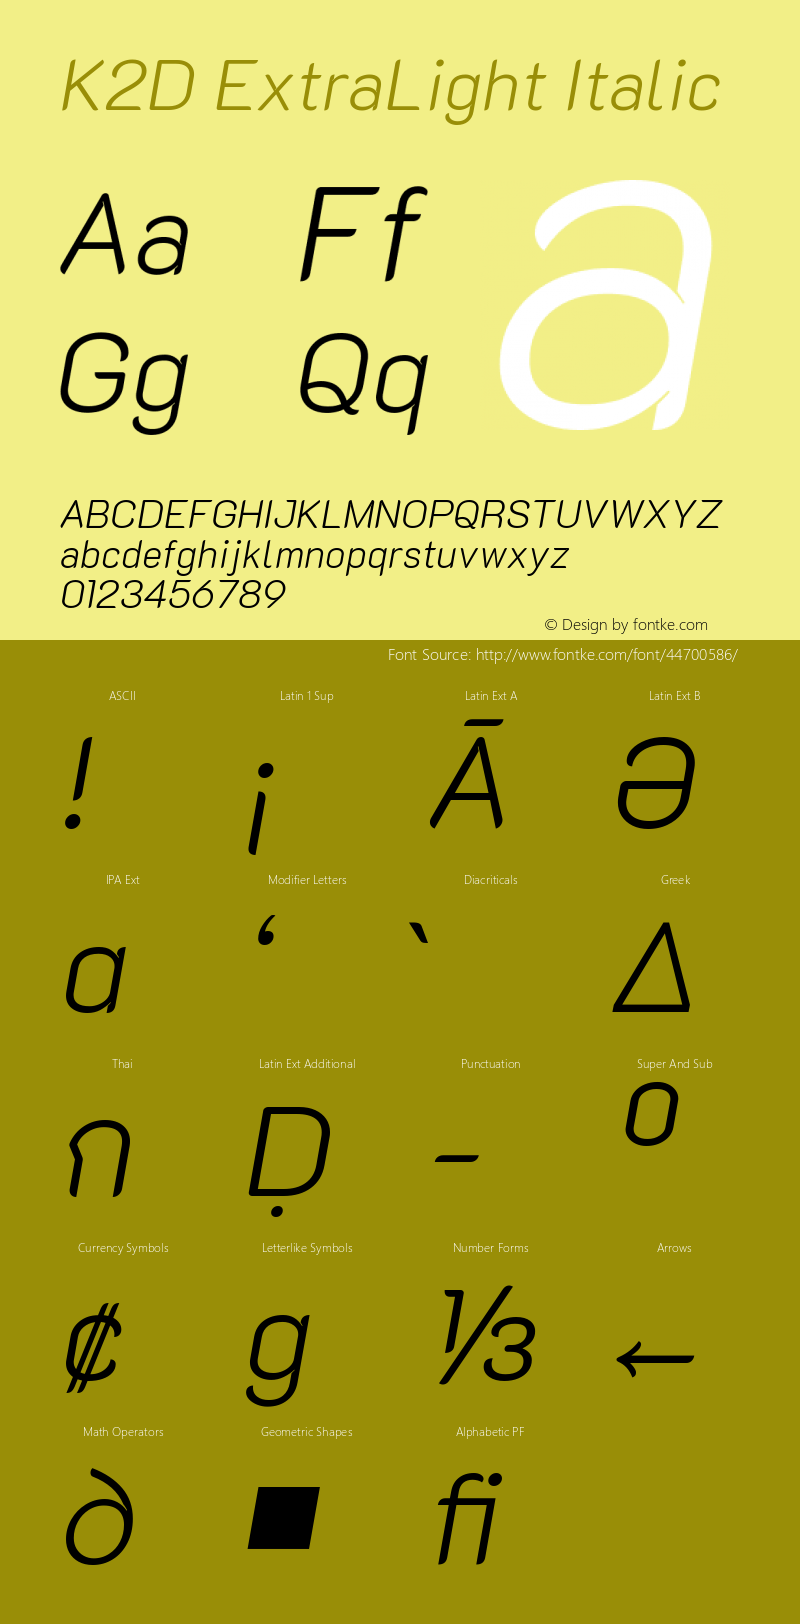 K2D ExtraLight Italic Version 1.000; ttfautohint (v1.6)图片样张